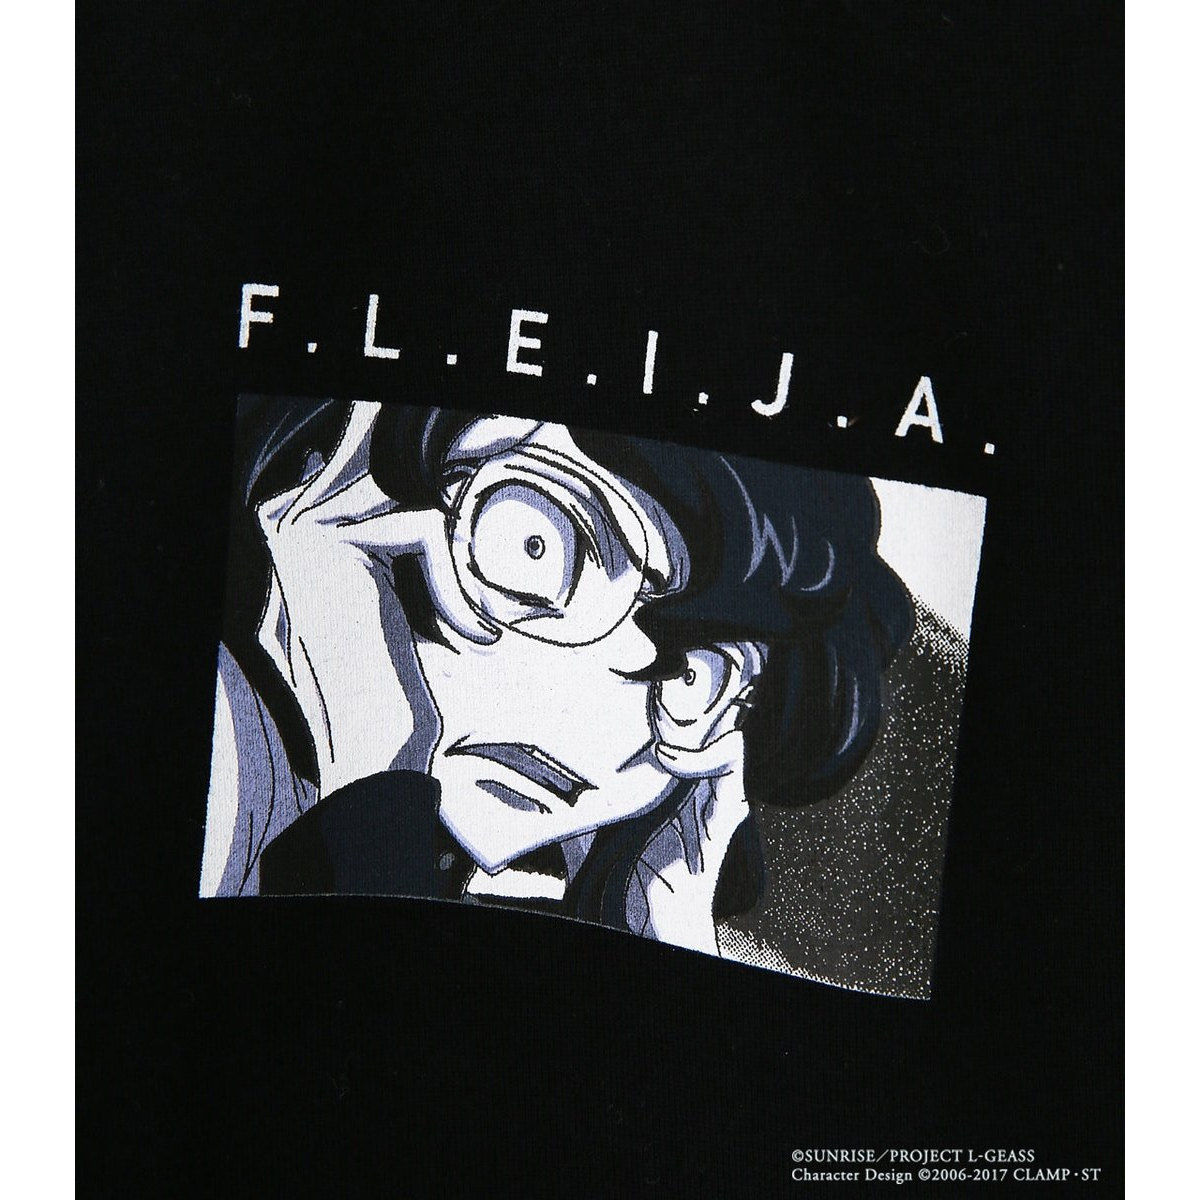 コードギアス 反逆のルルーシュ R4g F L E I J A Tシャツ コードギアスシリーズ 趣味 コレクション プレミアムバンダイ公式通販